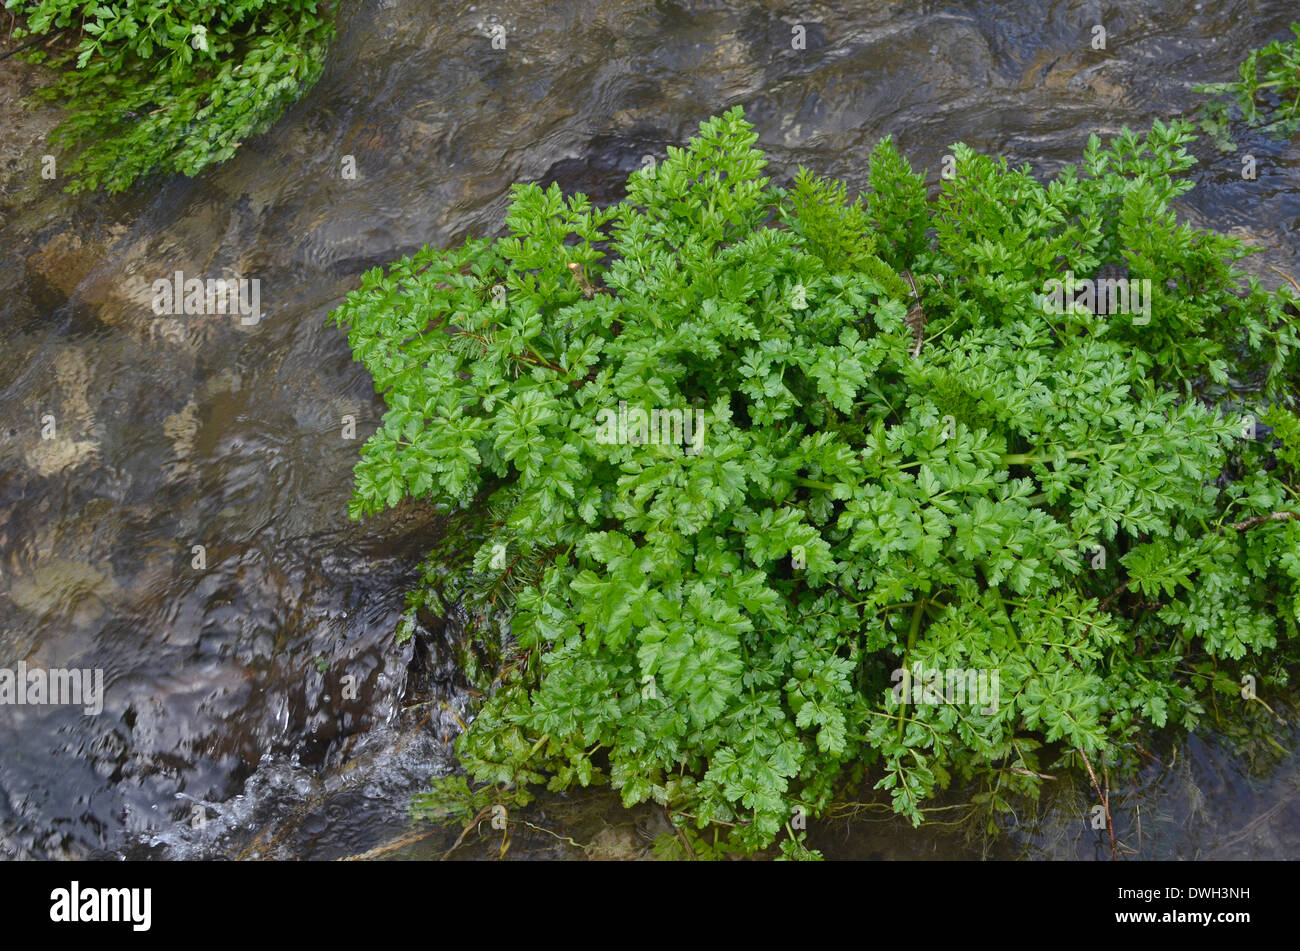 Hemlock Water Dropwort / Oenanthe crocata midstream. One of UK's most poisonous plants. Stock Photo